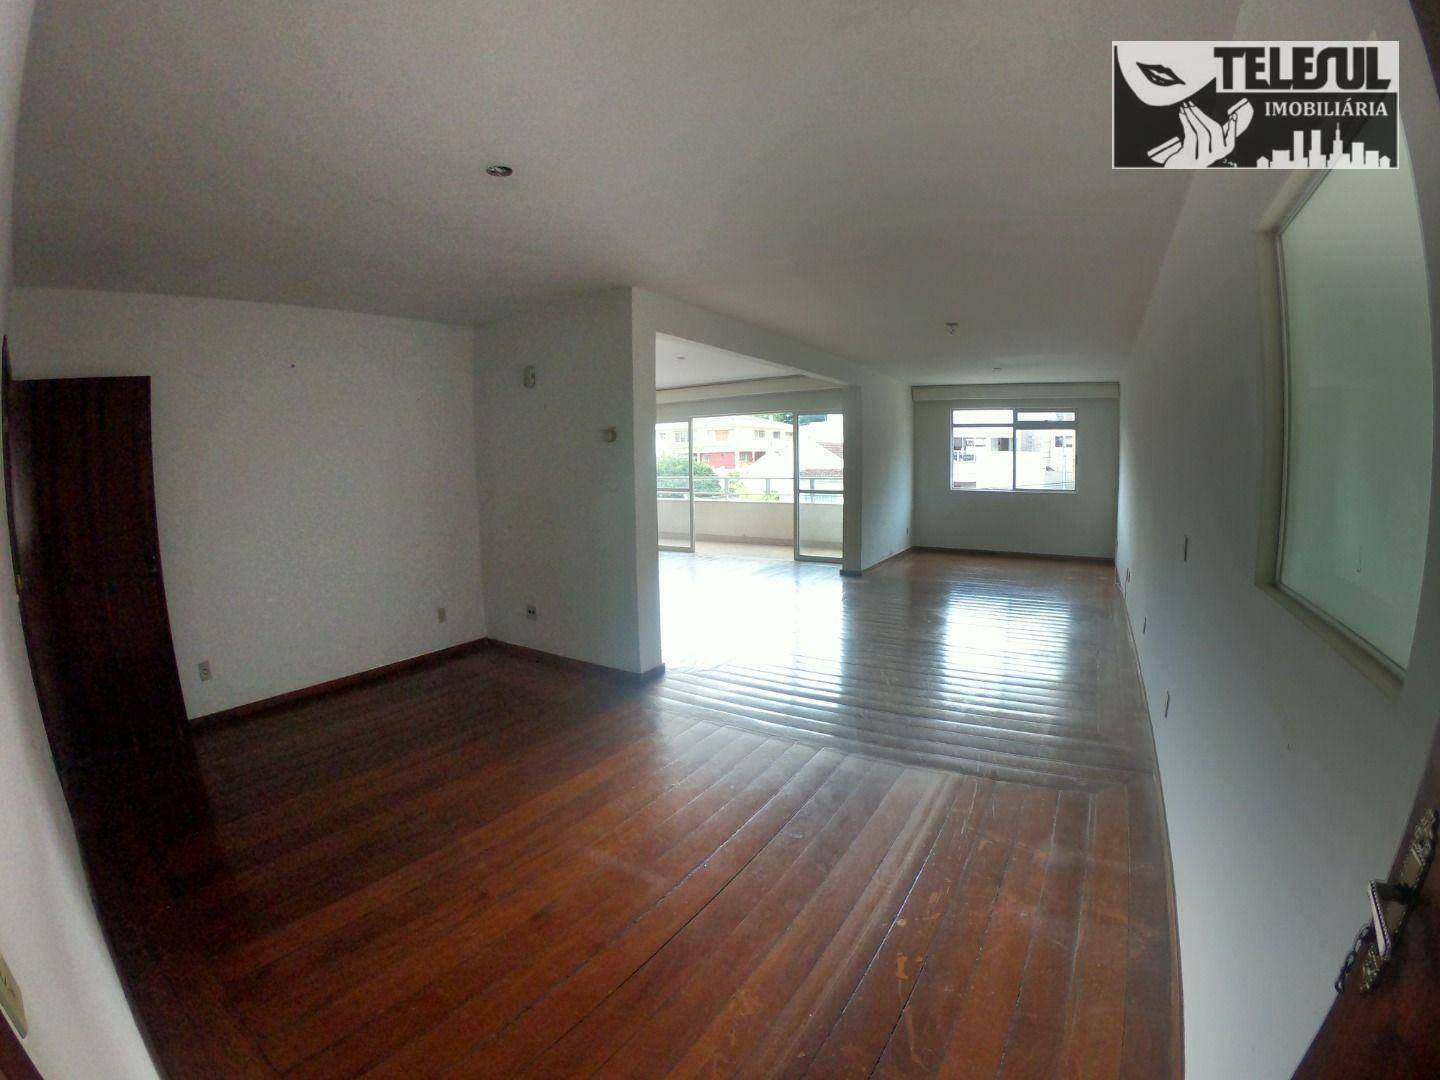 Apartamento, 4 quartos, 251 m² - Foto 3